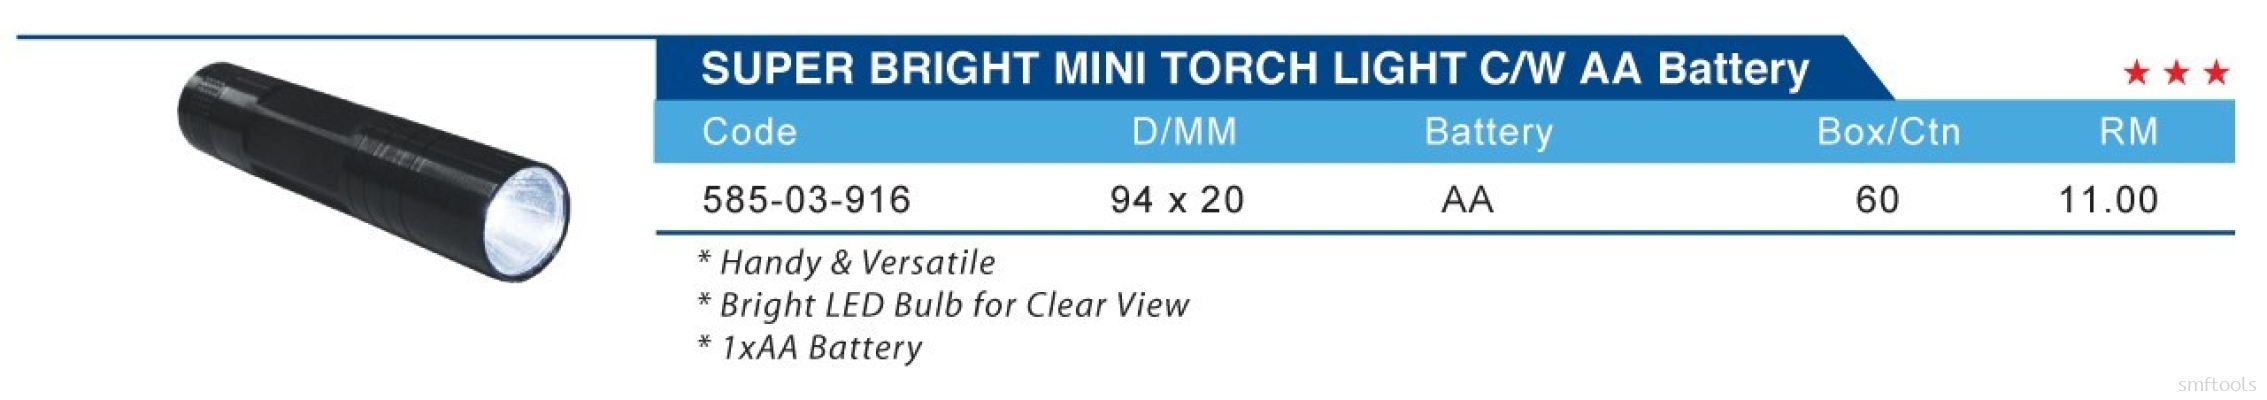 SUPER BRIGHT MINI TORCH LIGHT C/W AA BATTERY